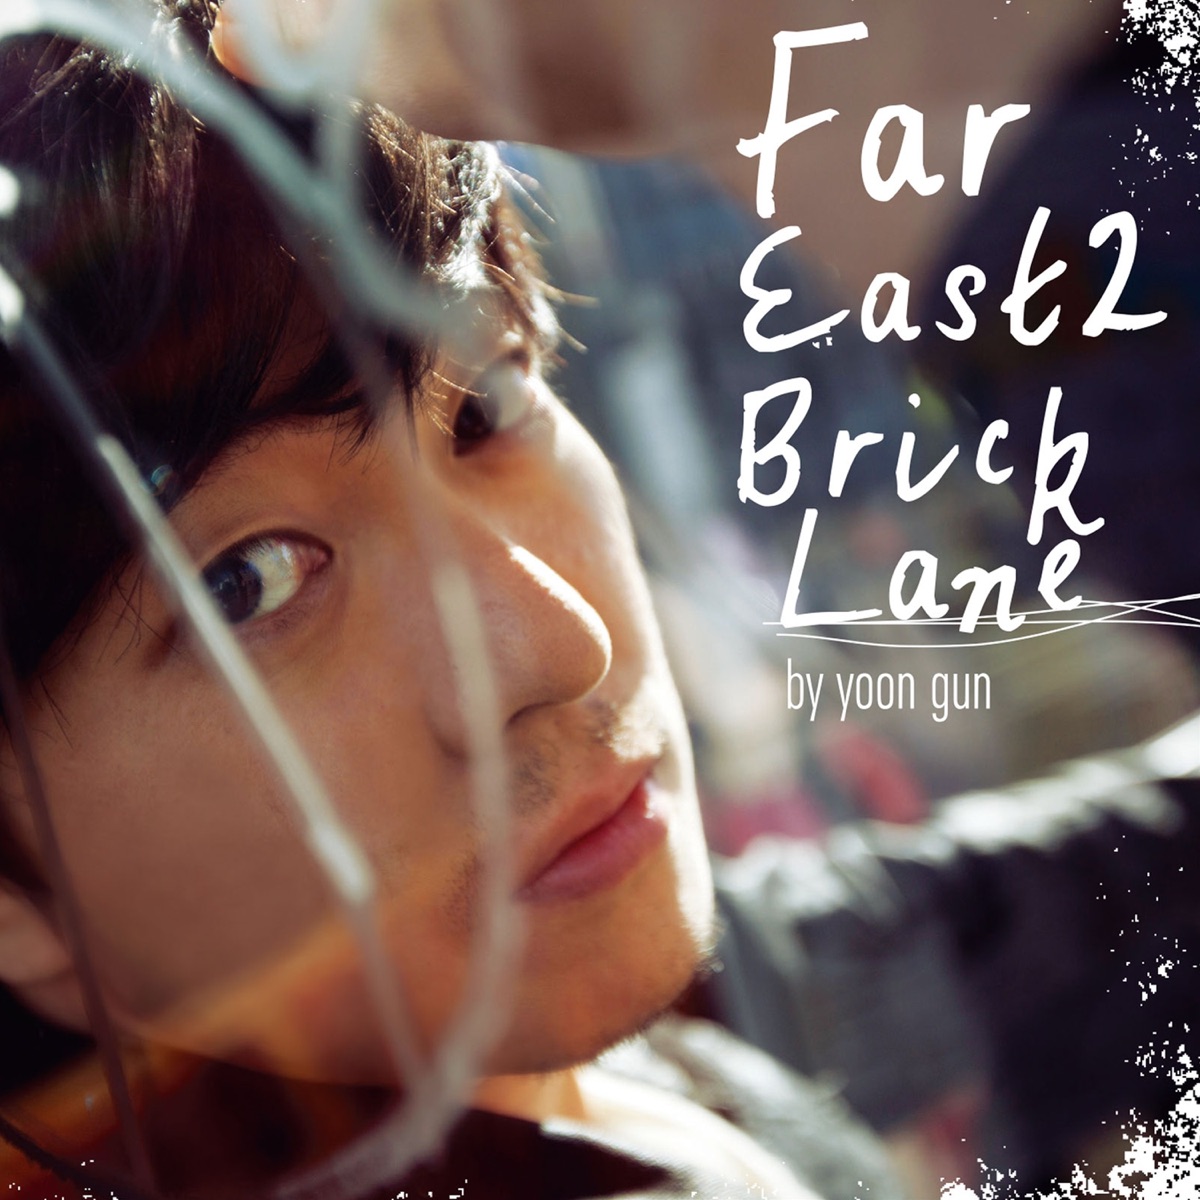 Yoon Gun – Far East 2 Bricklane – EP